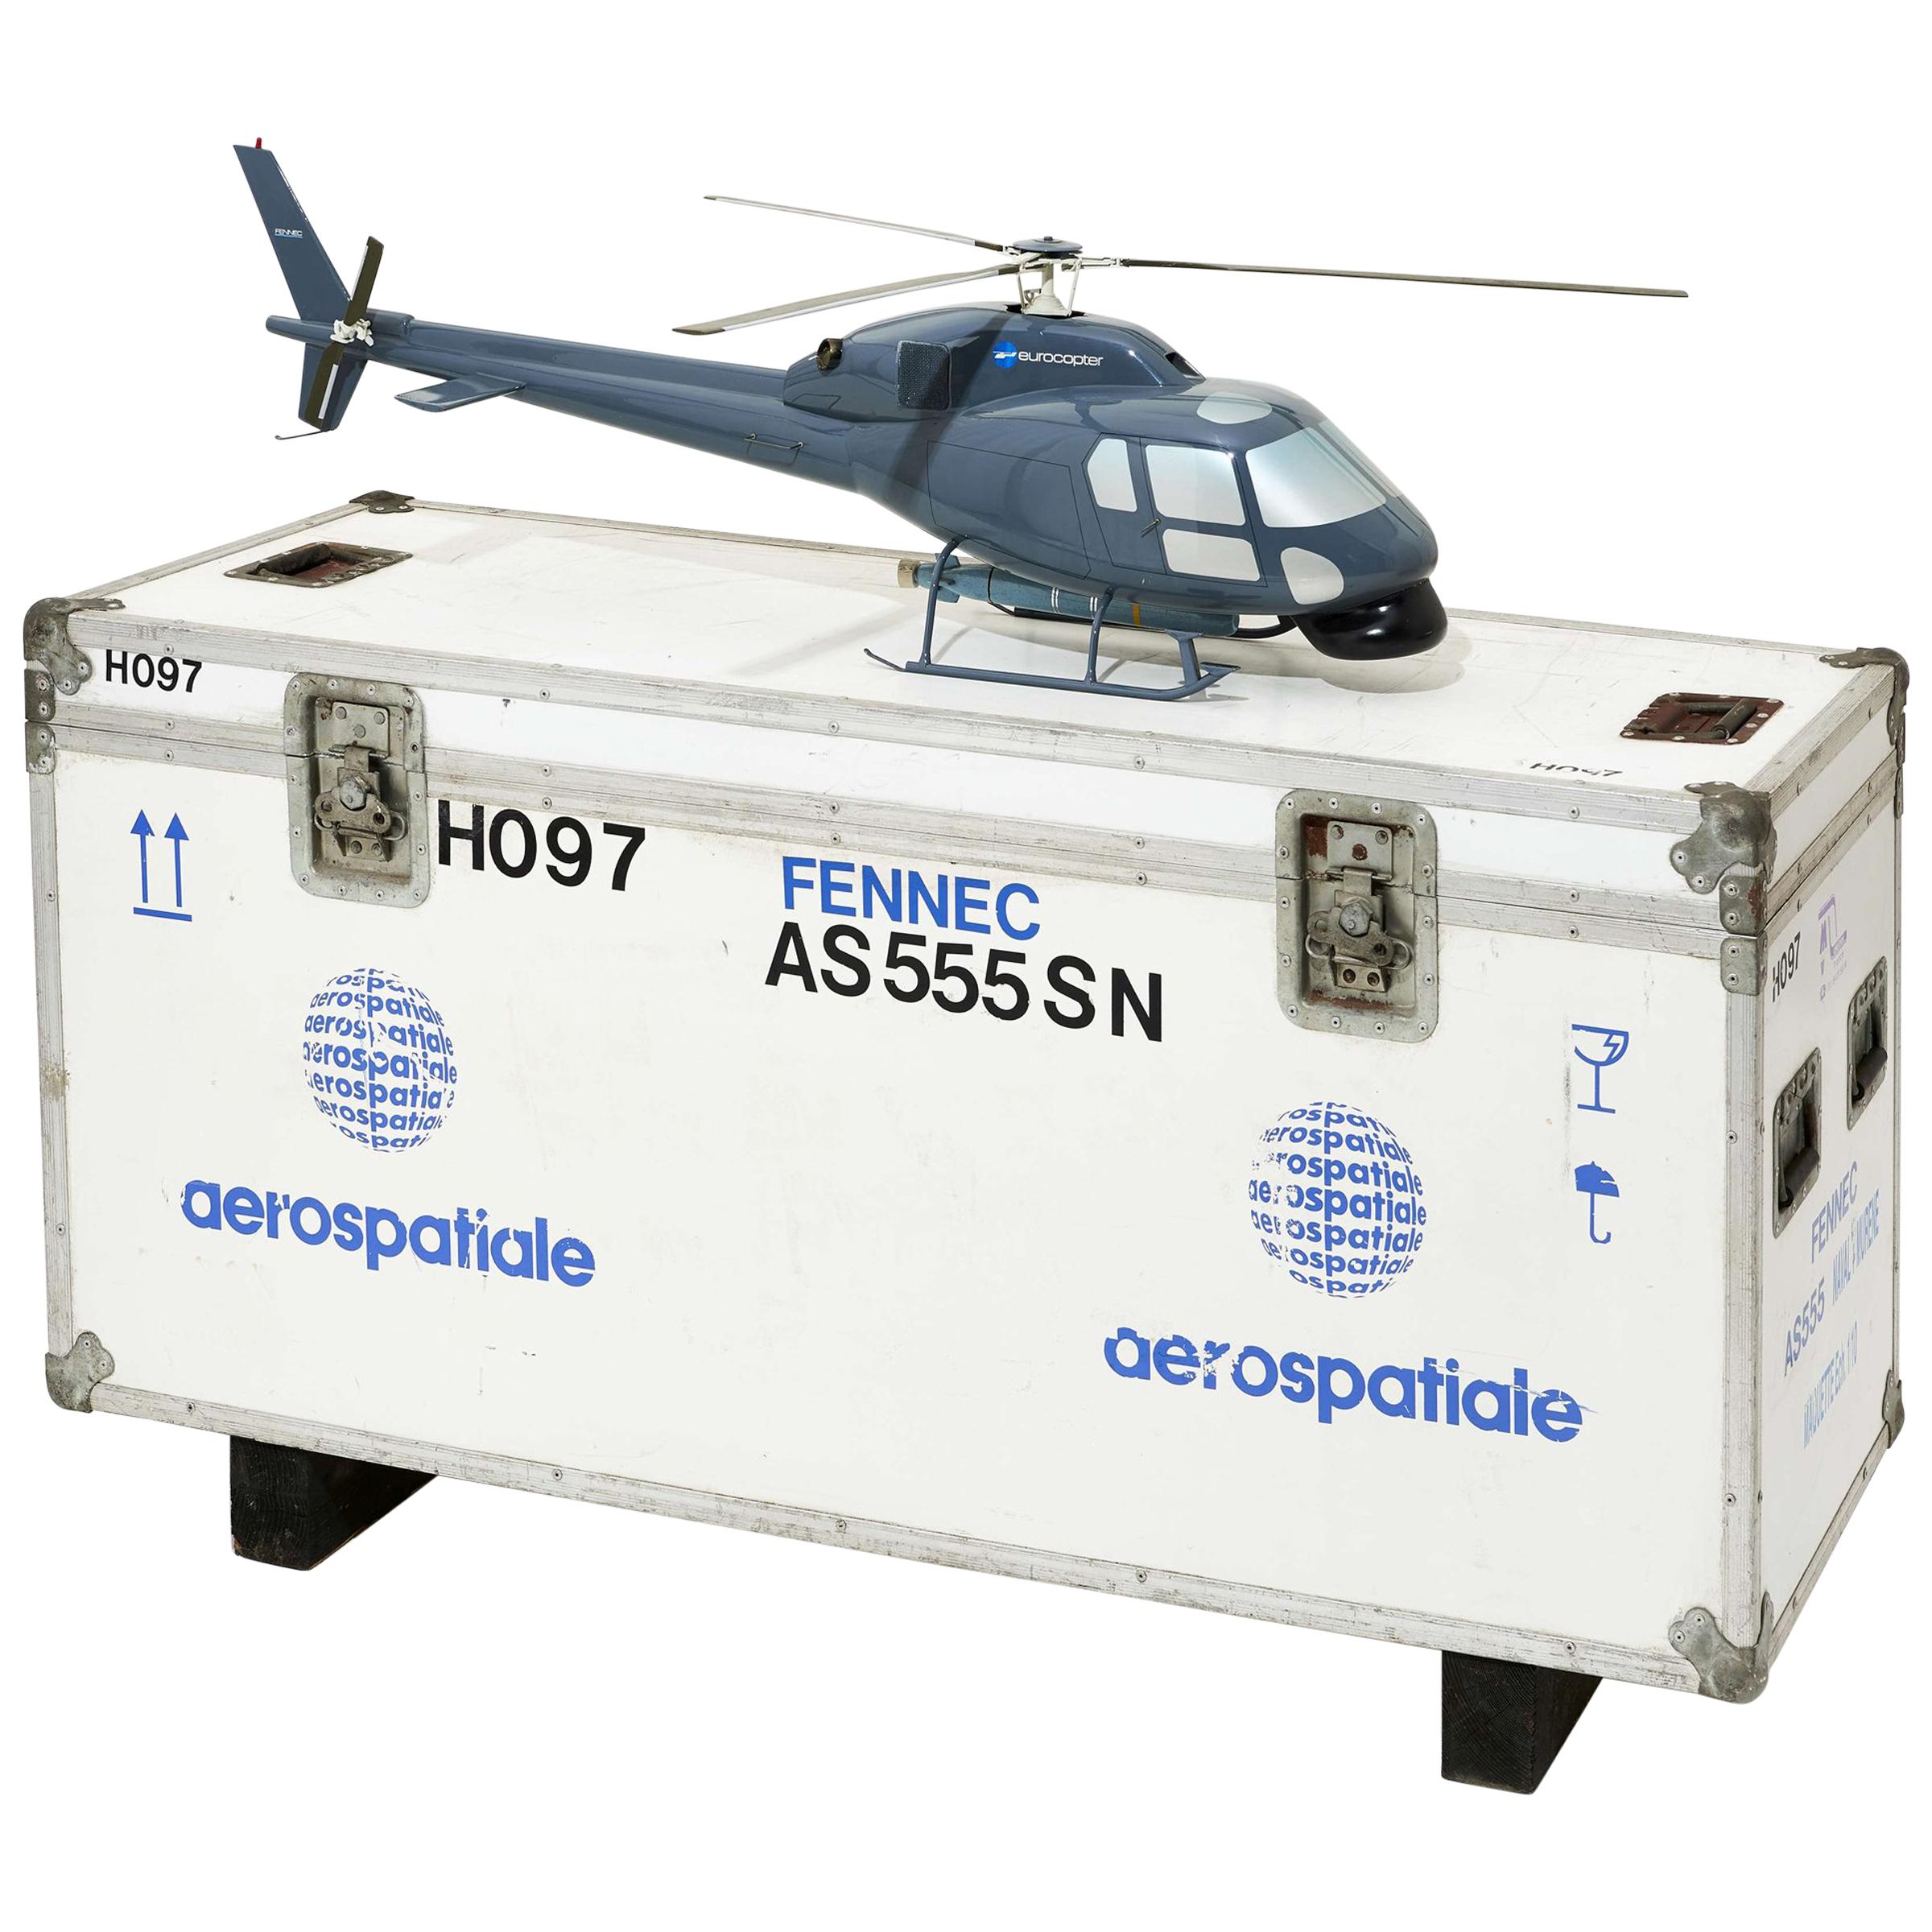 Fennec AS555 Hubschraubermodell mit Transportbox